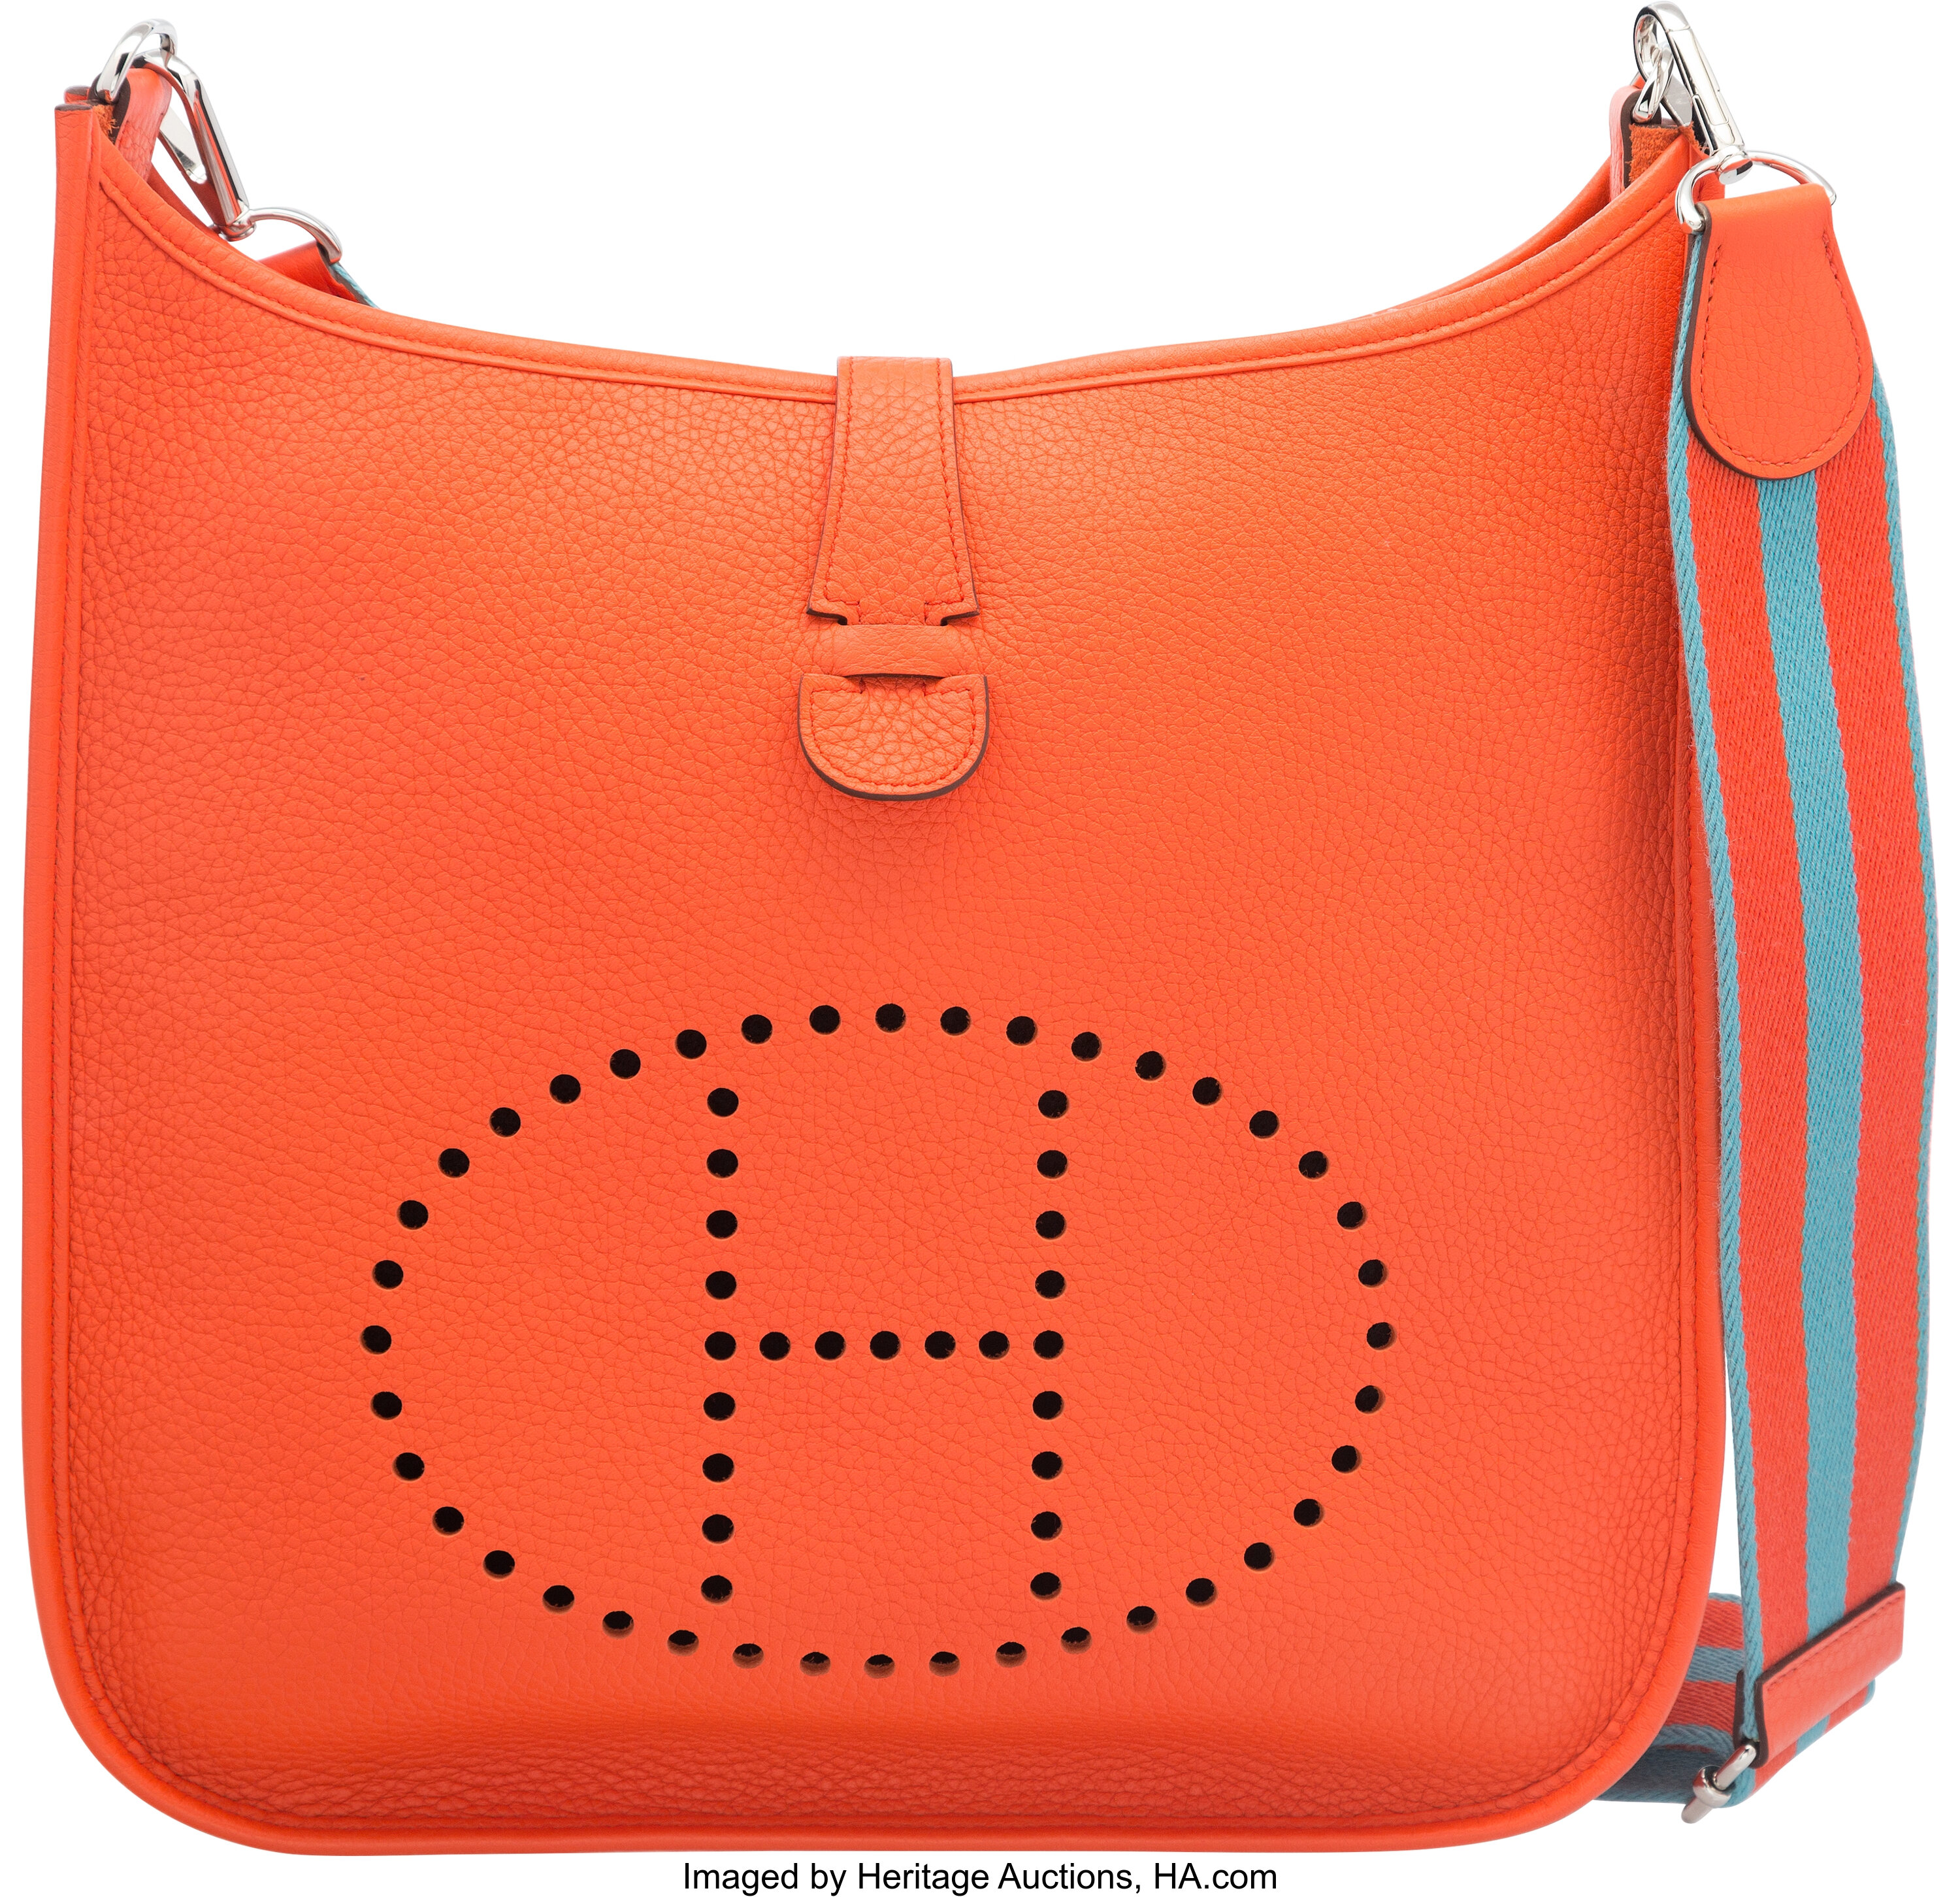 Sold at Auction: Hermes Evelyne III GM Bag